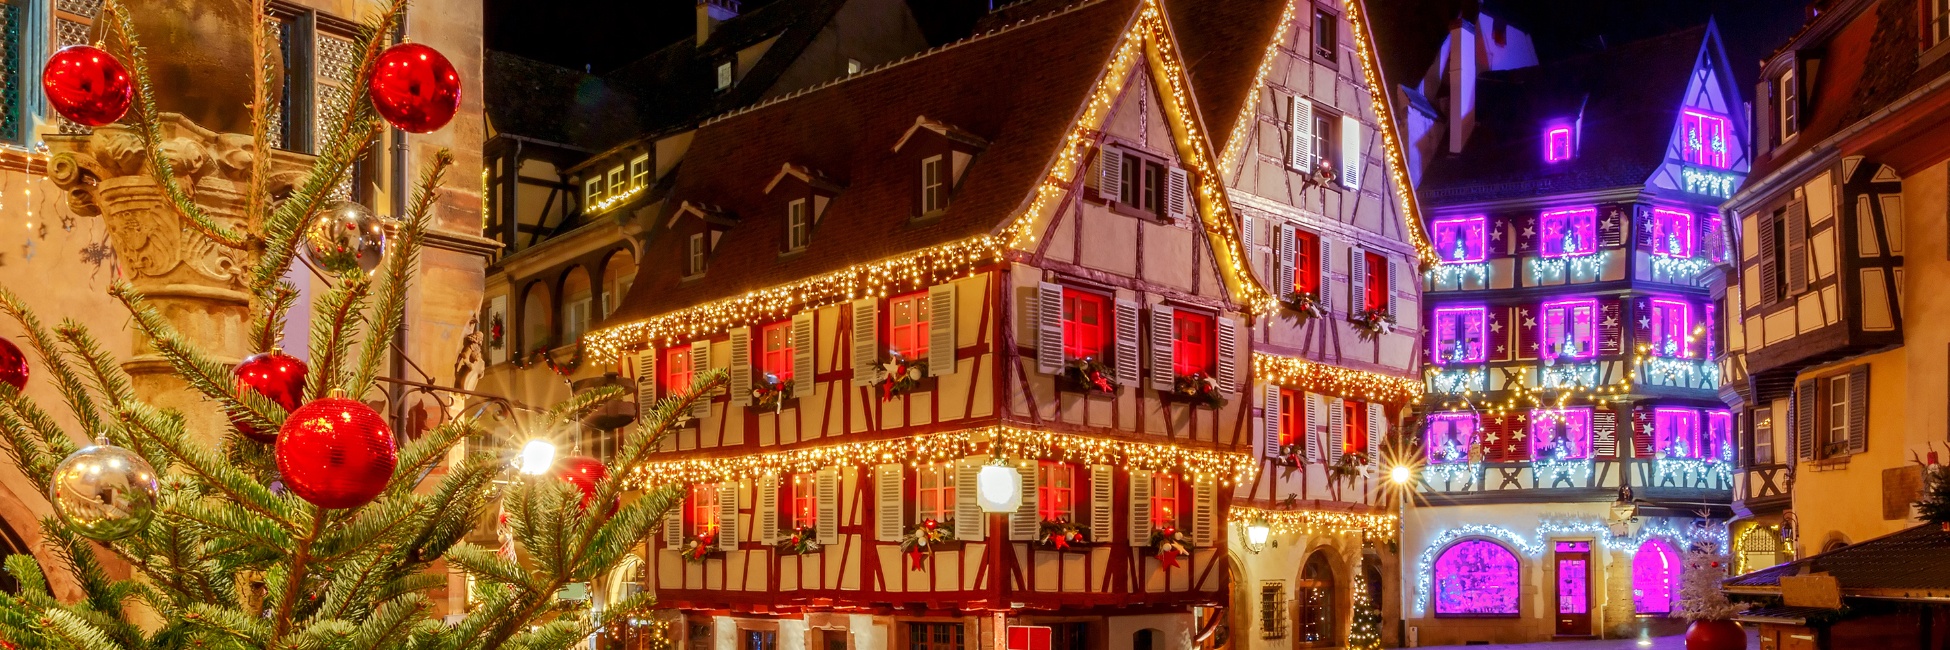 CKC_PP - La magia de los mercados navideños en los canales de Alsacia